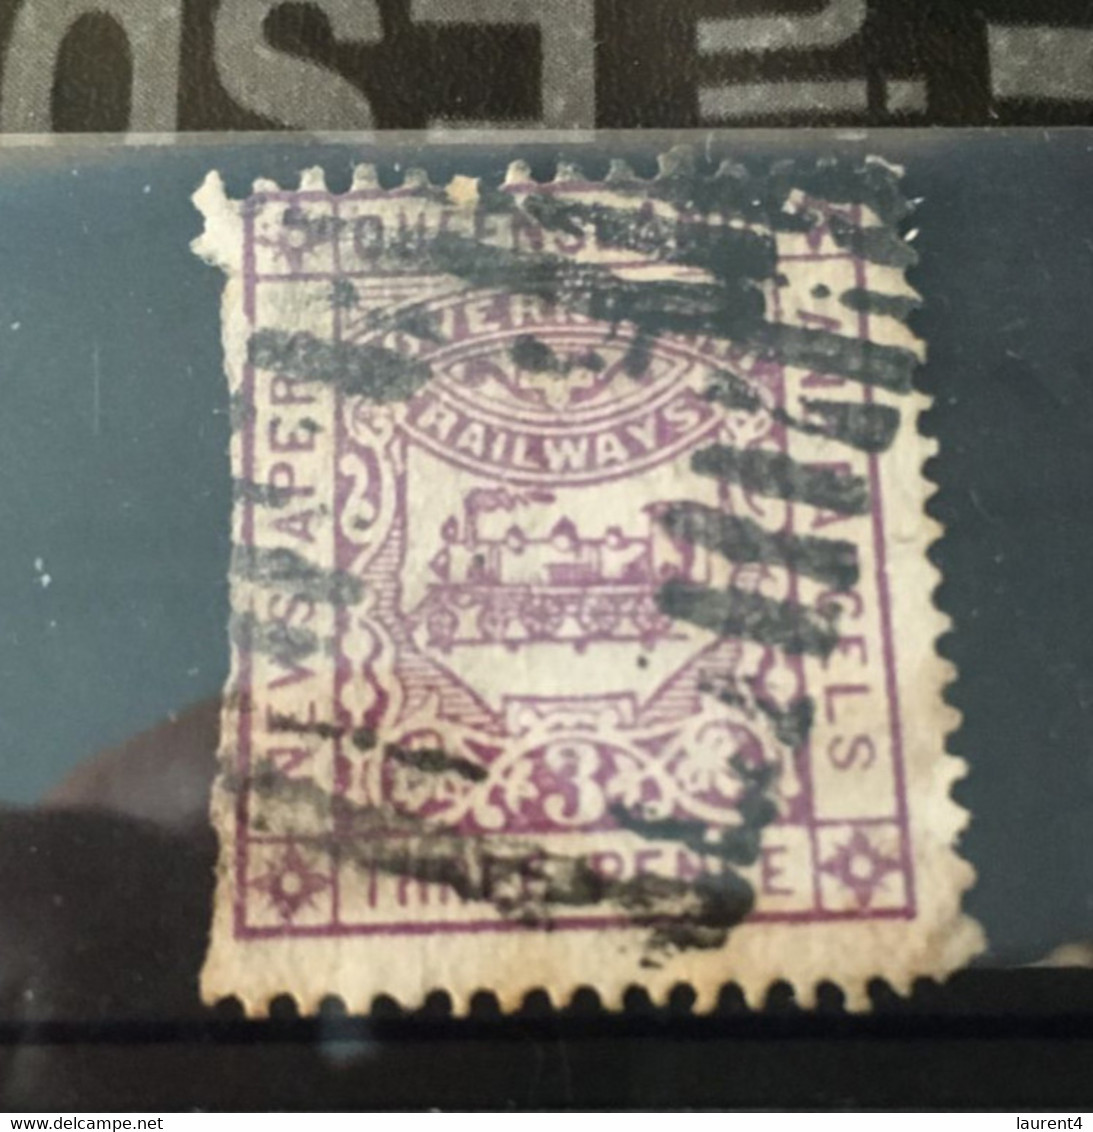 (Stamps 9-3-2021) Australia Queensland Railway (1 Stamp) - Segnatasse